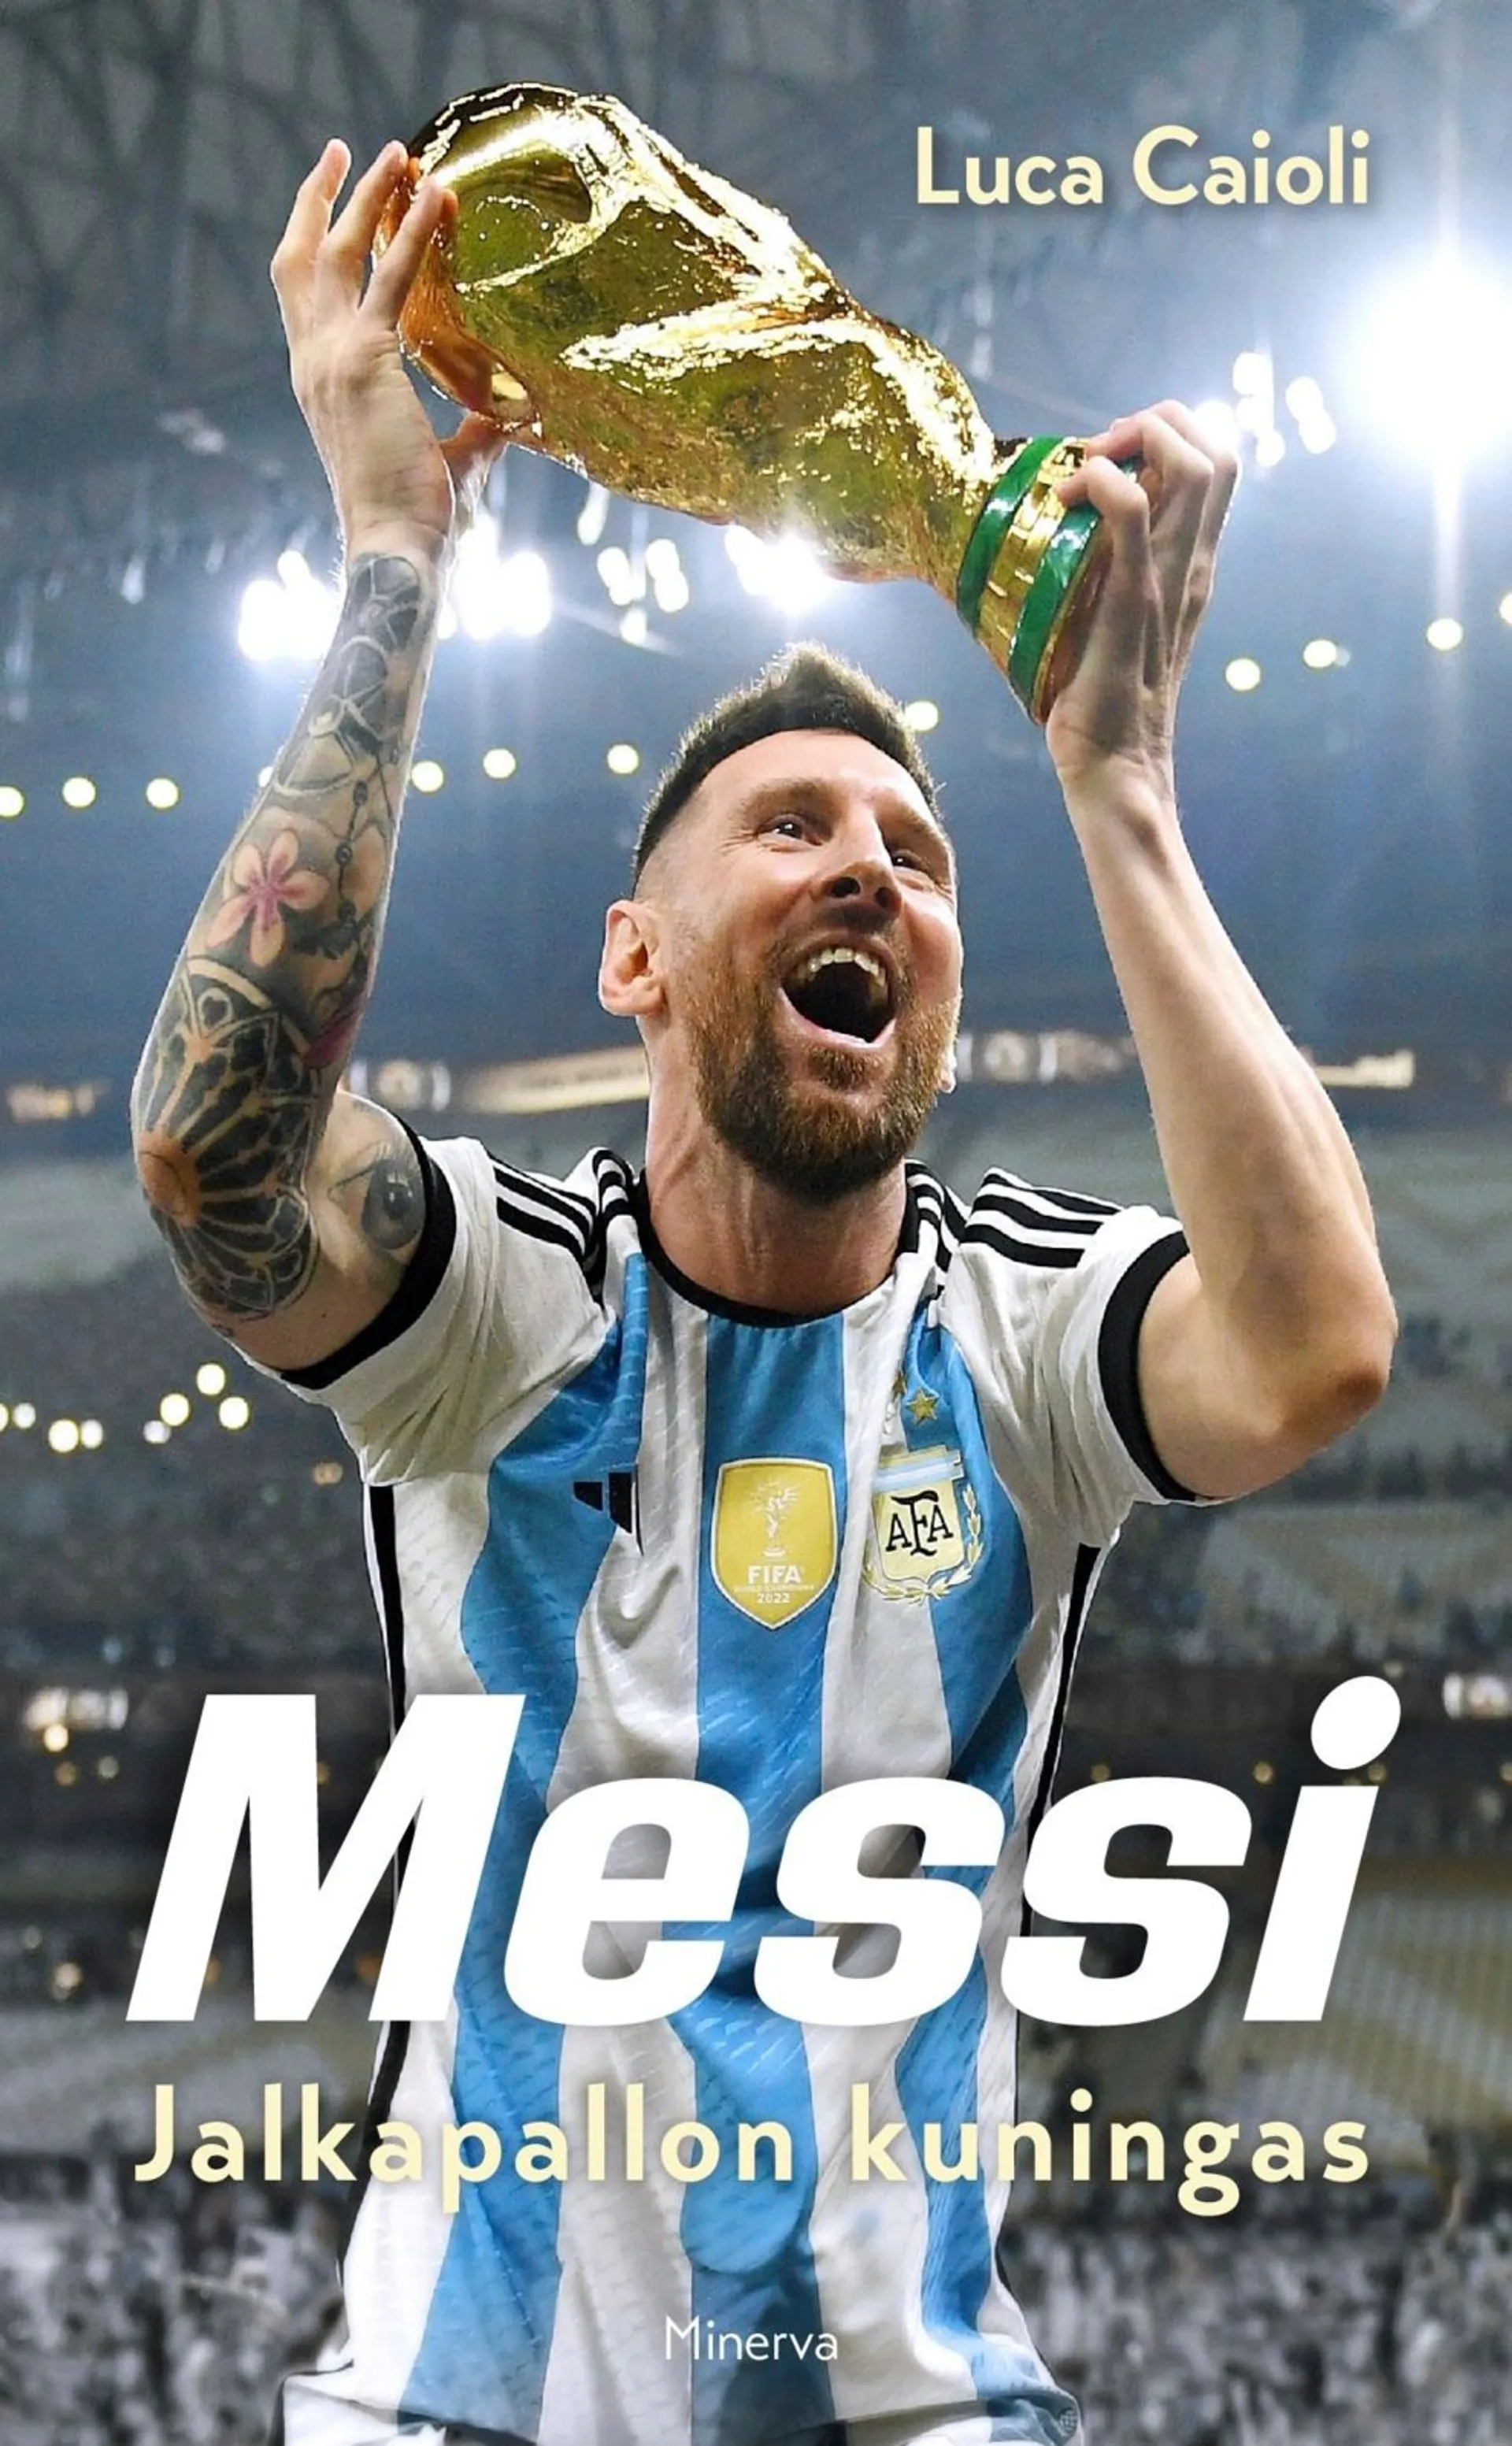 Caioli, Messi - Jalkapallon kuningas